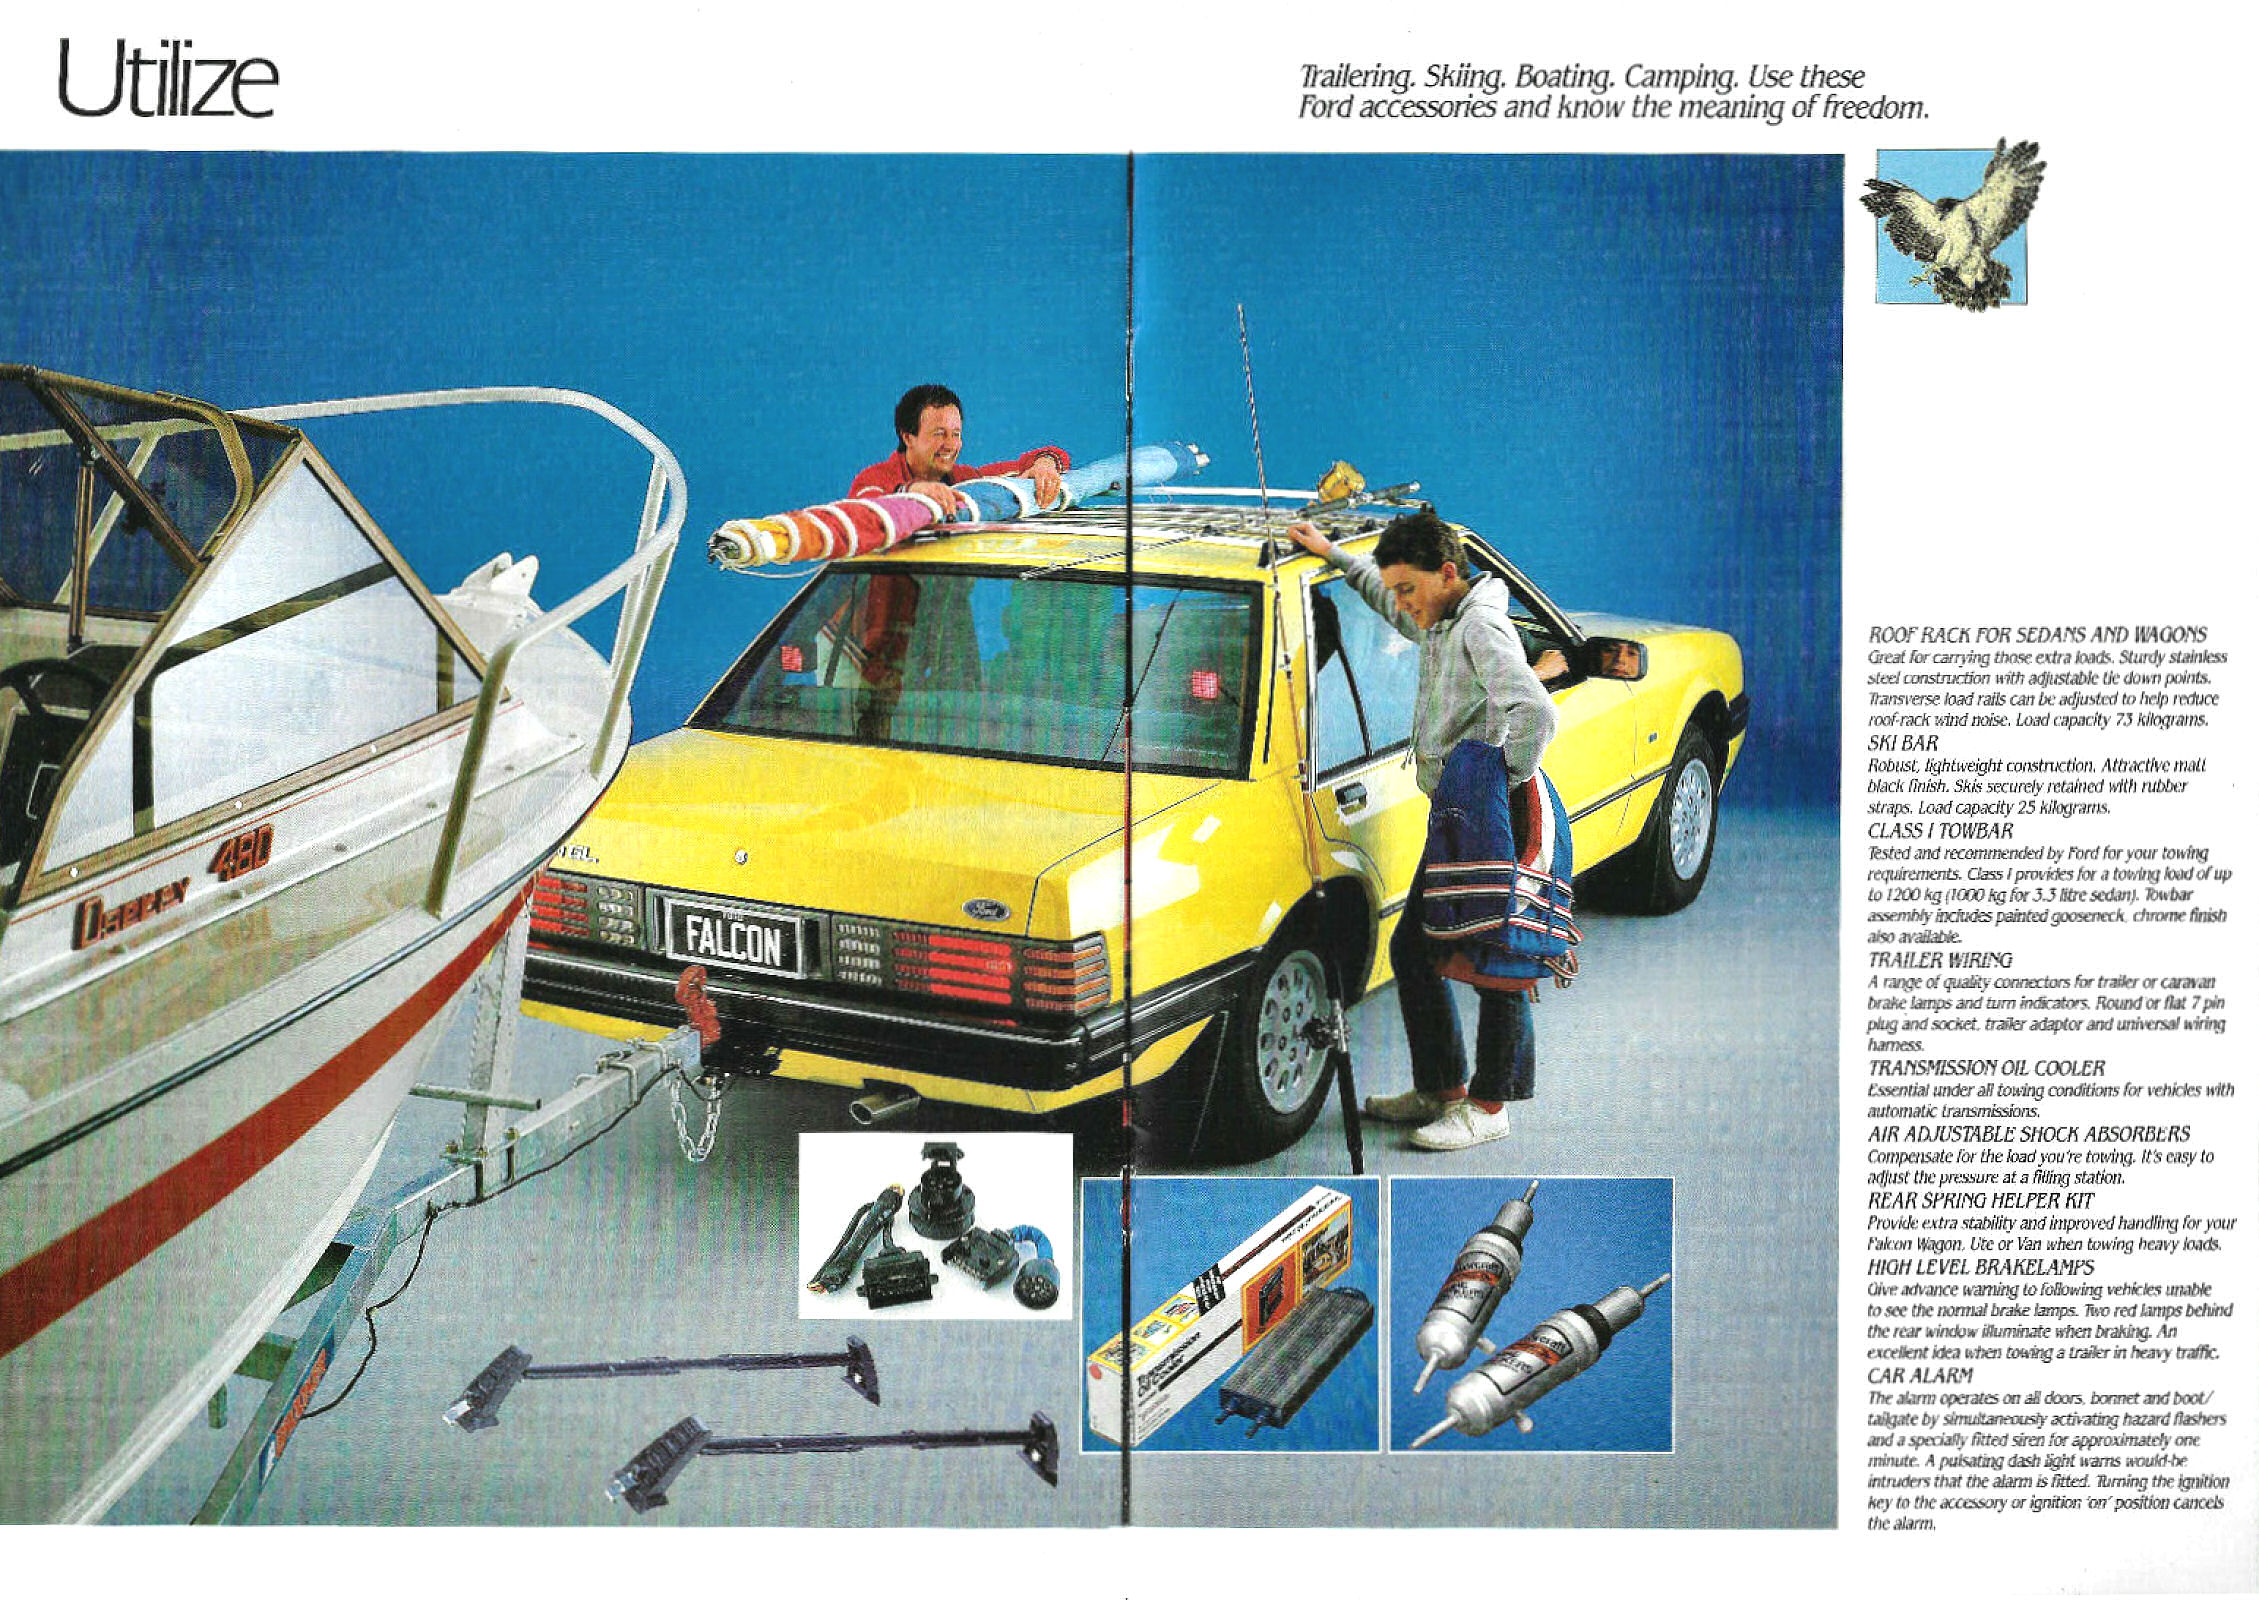 1984 Ford Falcon Accessories (Aus)-08-09